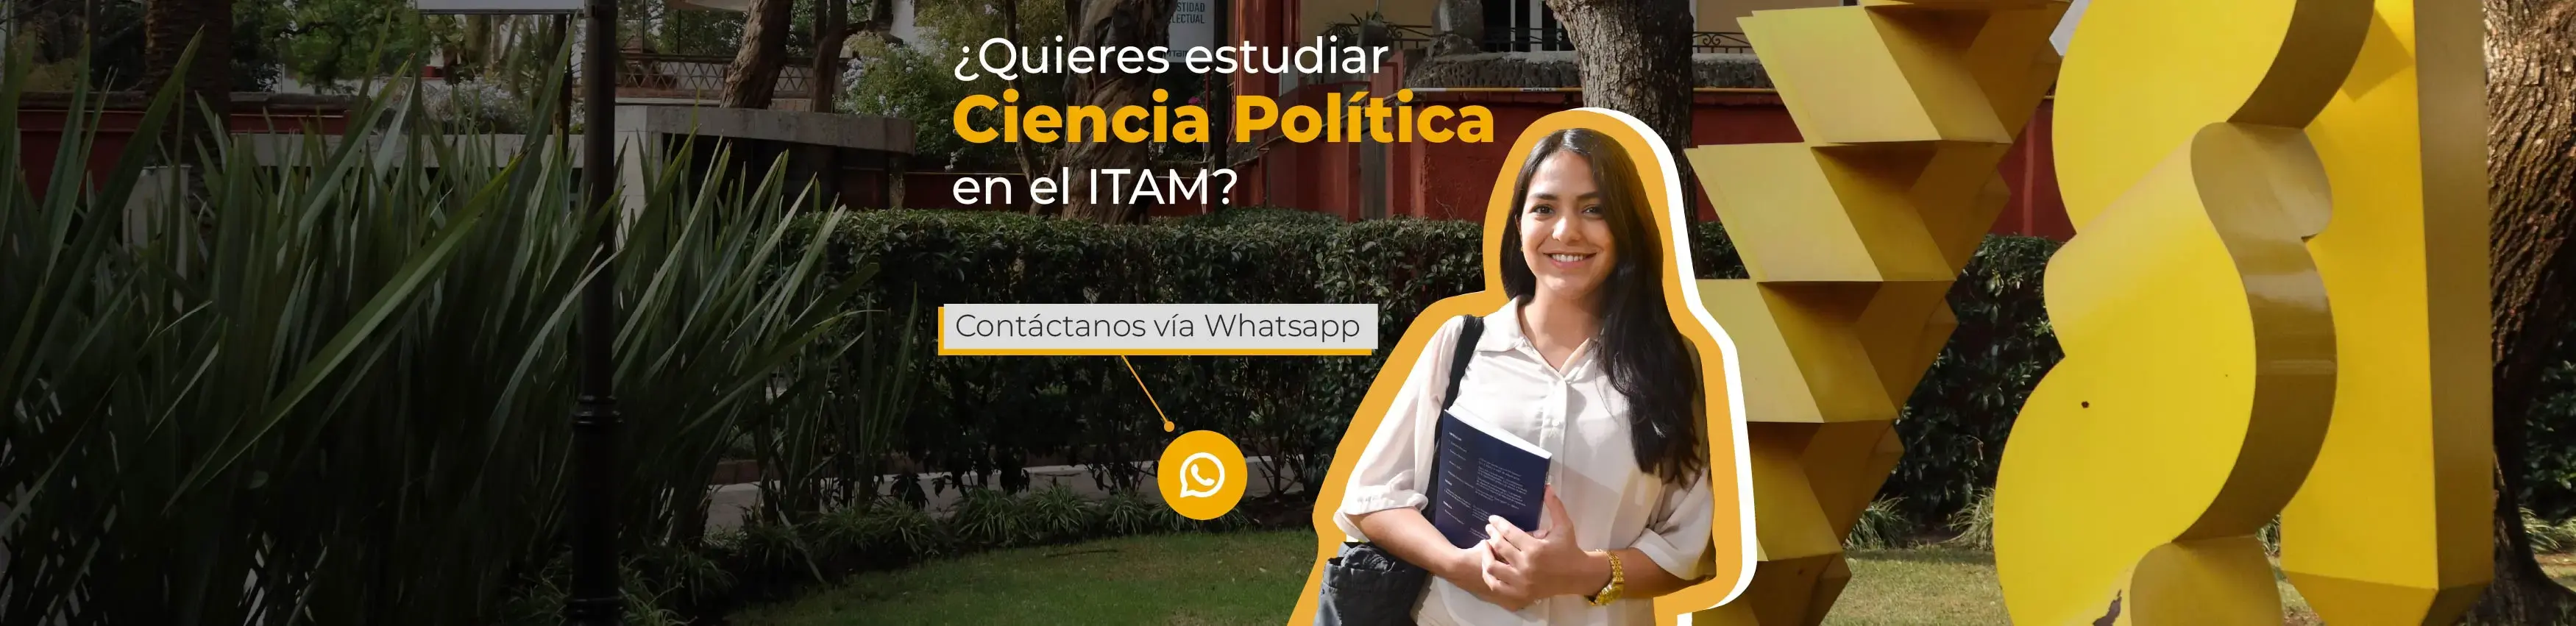 ¿Quieres estudiar Ciencia Política en el ITAM?